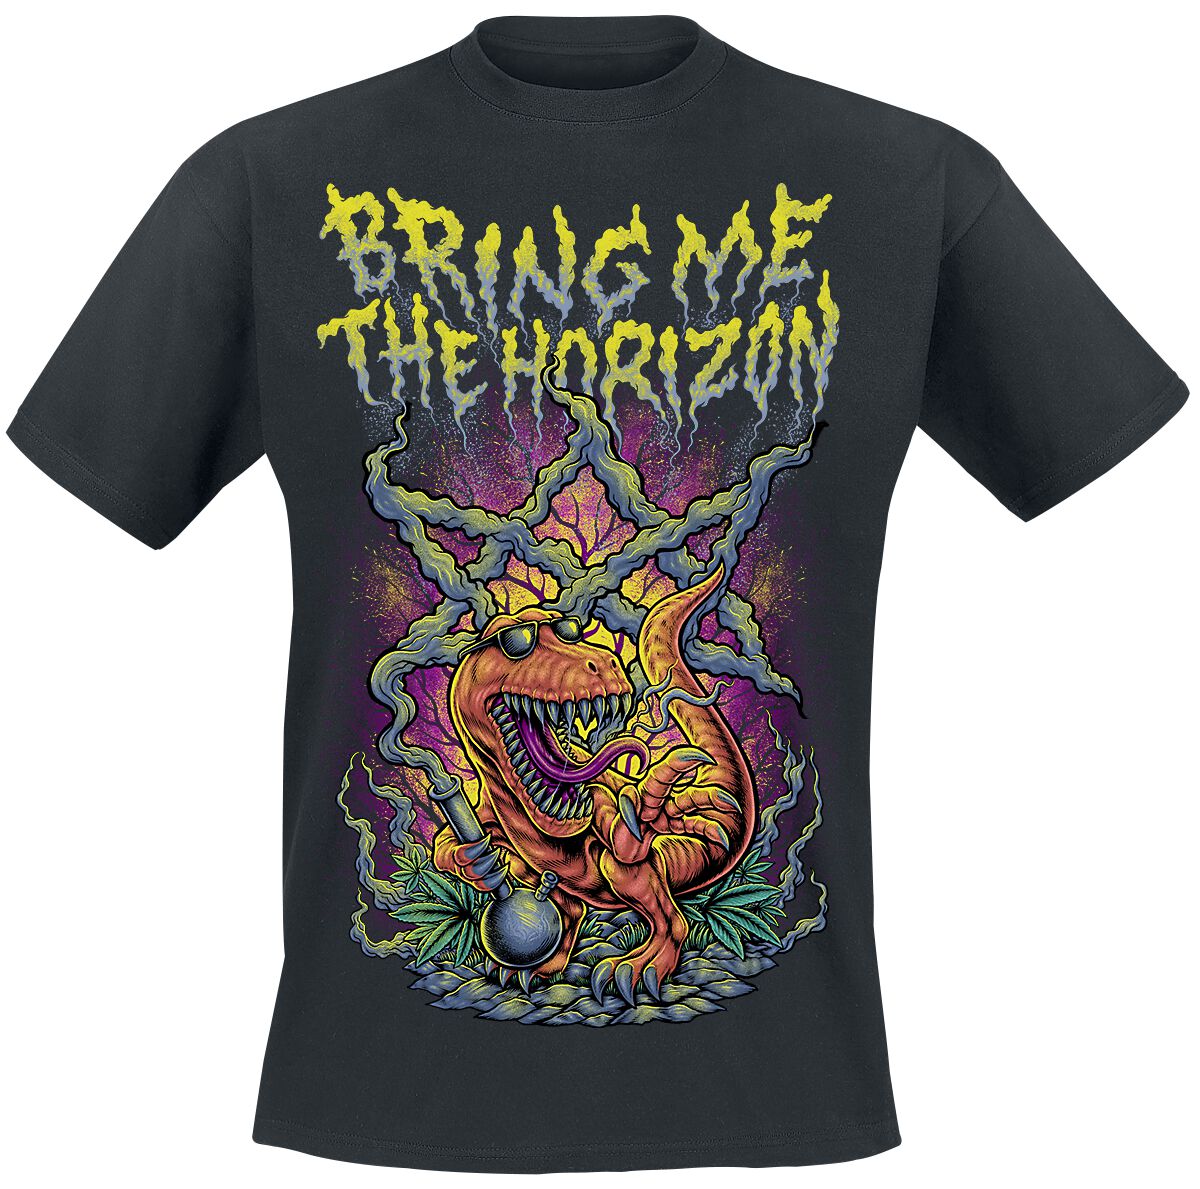 Bring Me The Horizon T-Shirt - Smoking Dinosaur - S bis XXL - für Männer - Größe XL - schwarz  - Lizenziertes Merchandise!